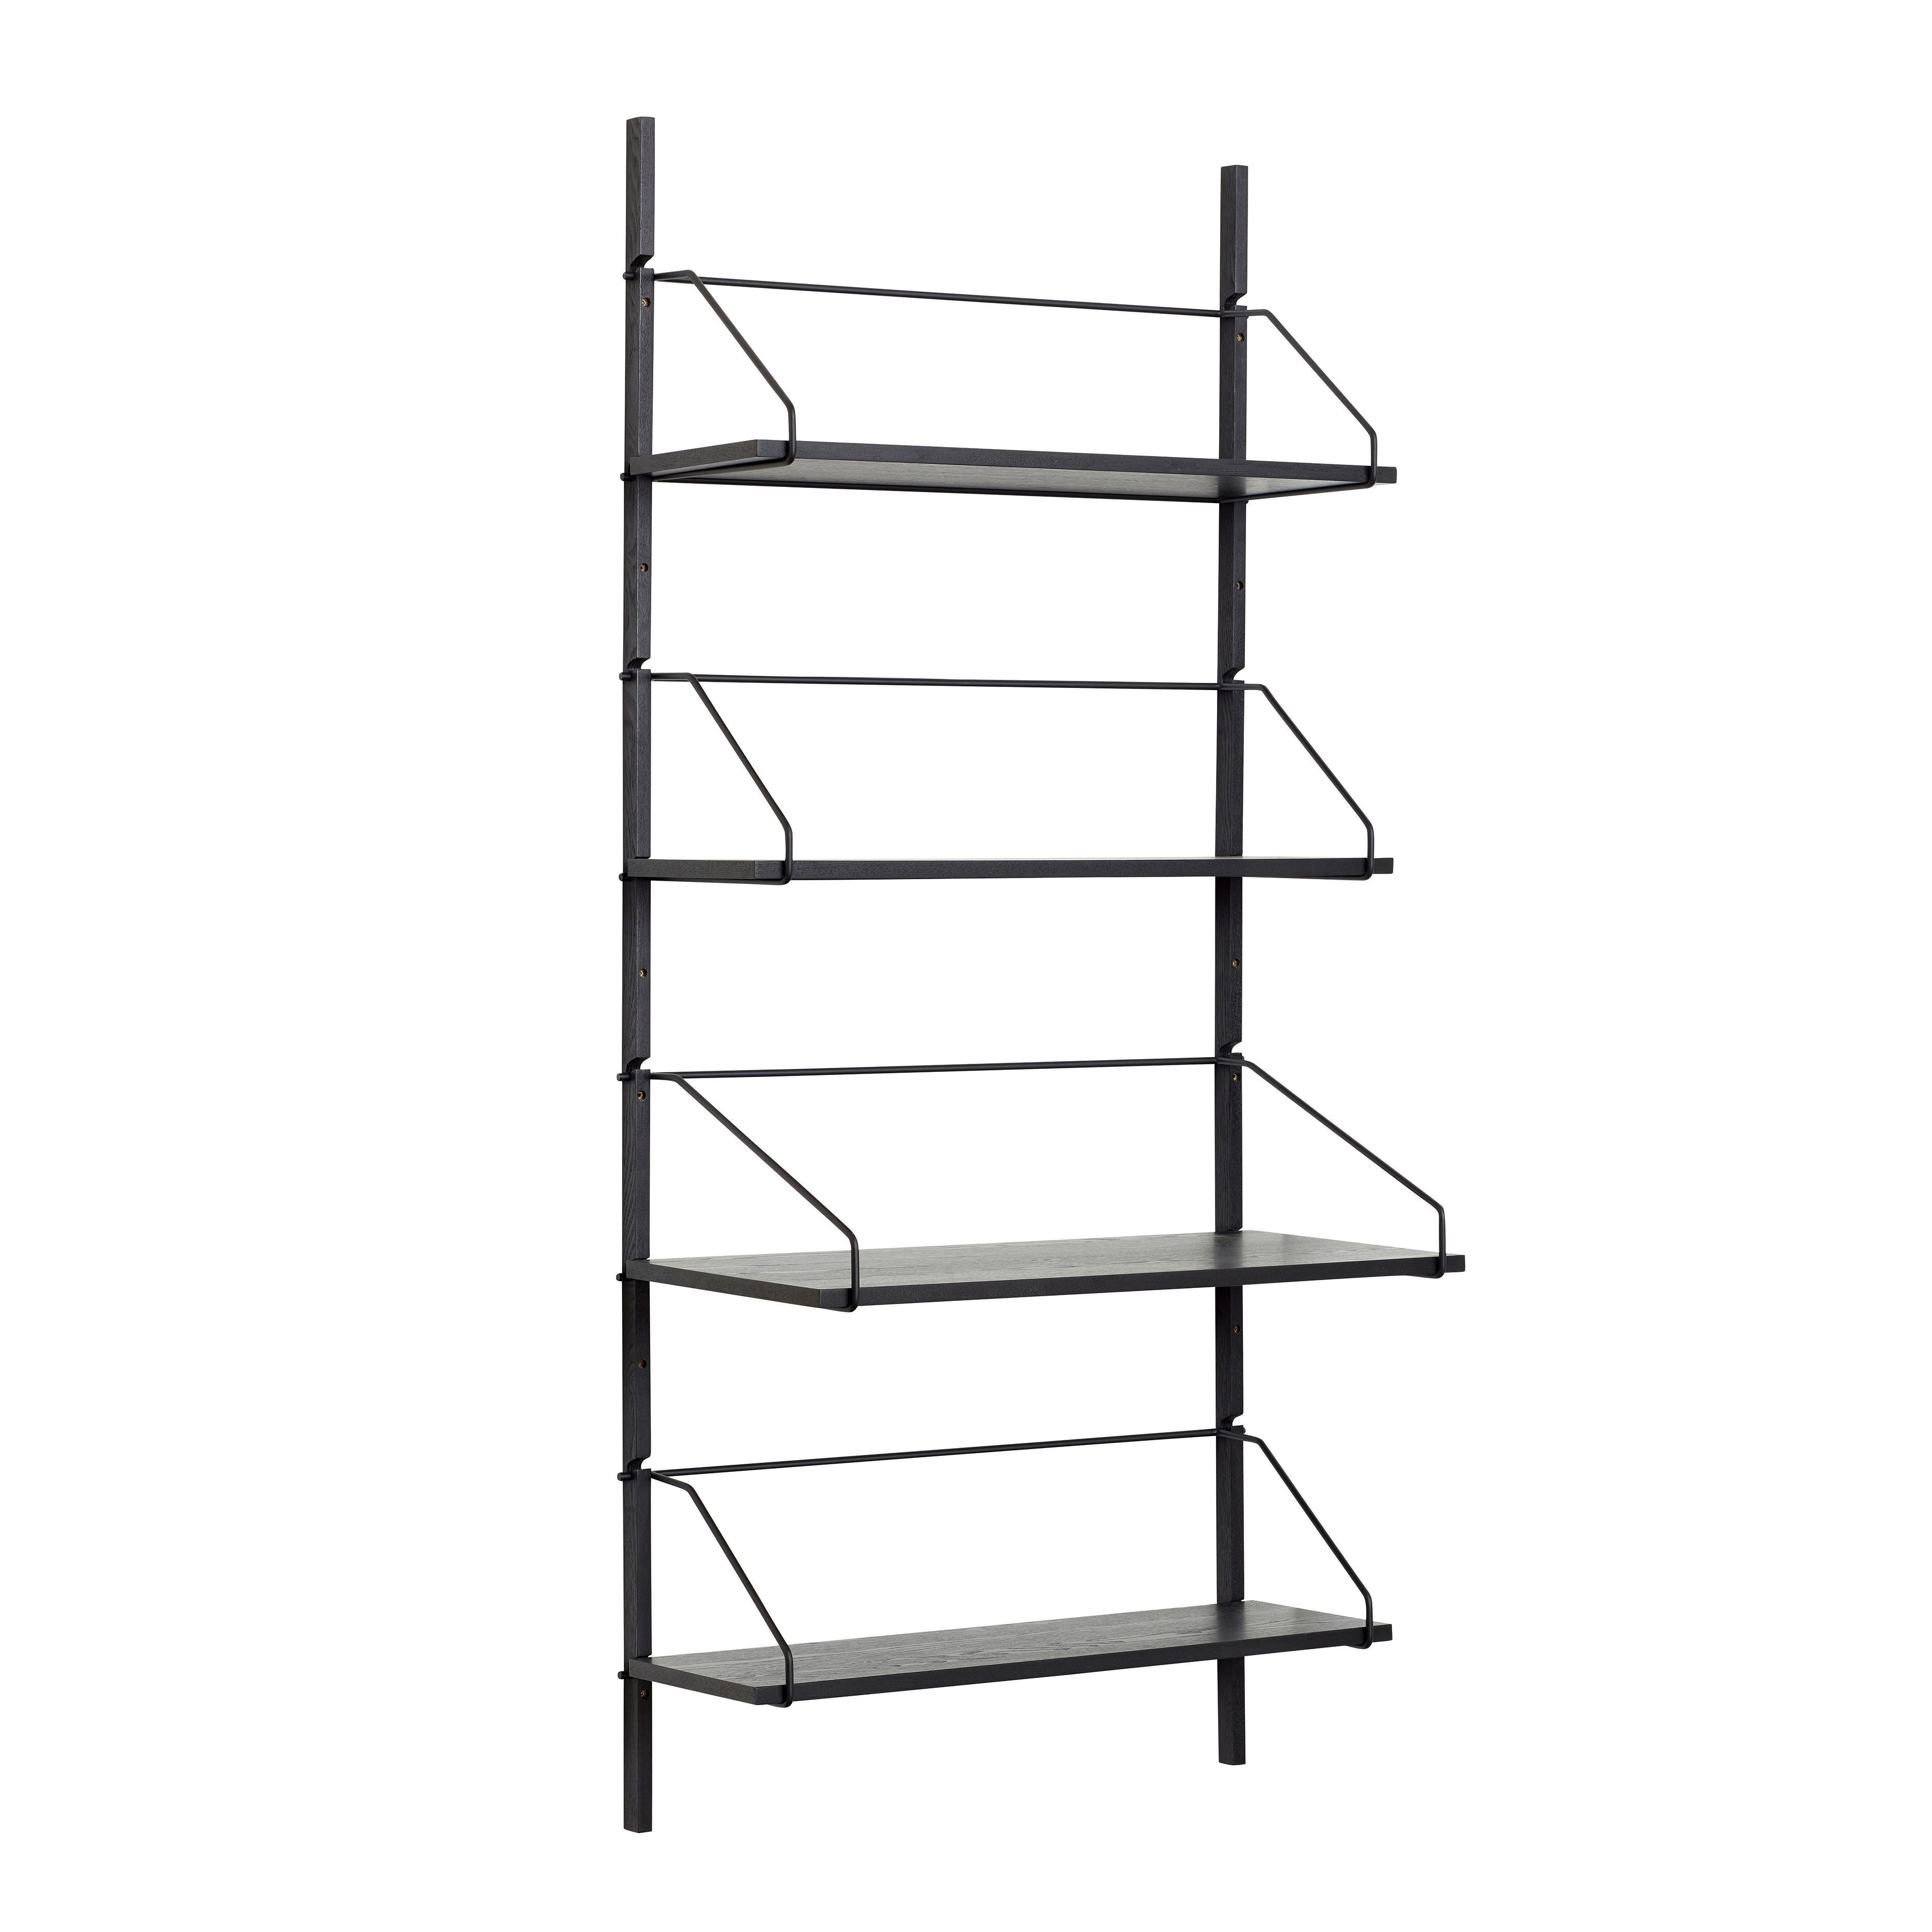 Hübsch Norm Wall Shelf Unit 4 Shelves Black